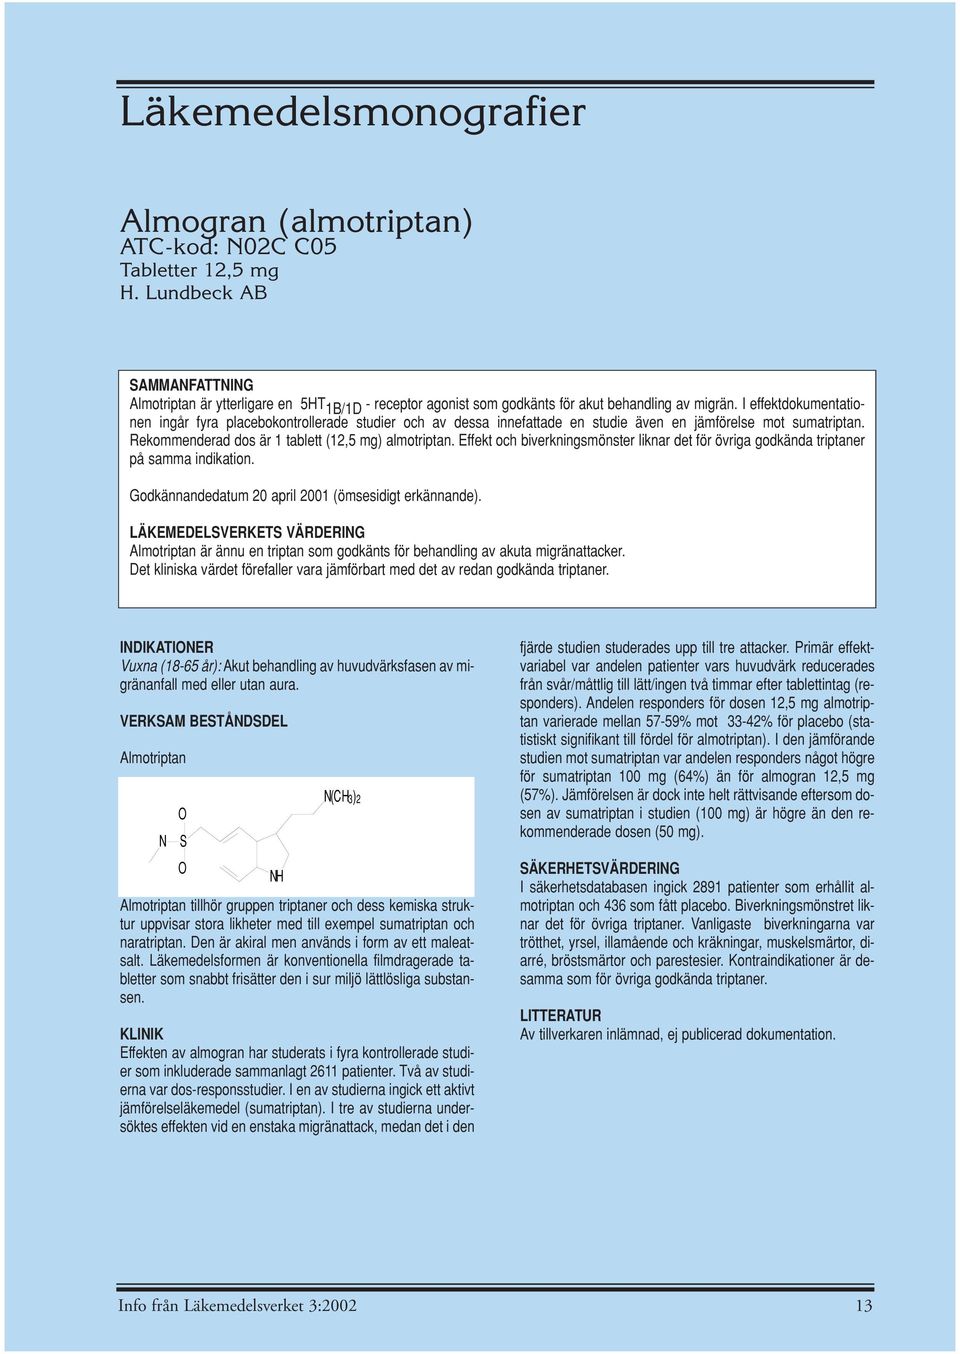 I effektdokumentationen ingår fyra placebokontrollerade studier och av dessa innefattade en studie även en jämförelse mot sumatriptan. Rekommenderad dos är 1 tablett (12,5 mg) almotriptan.